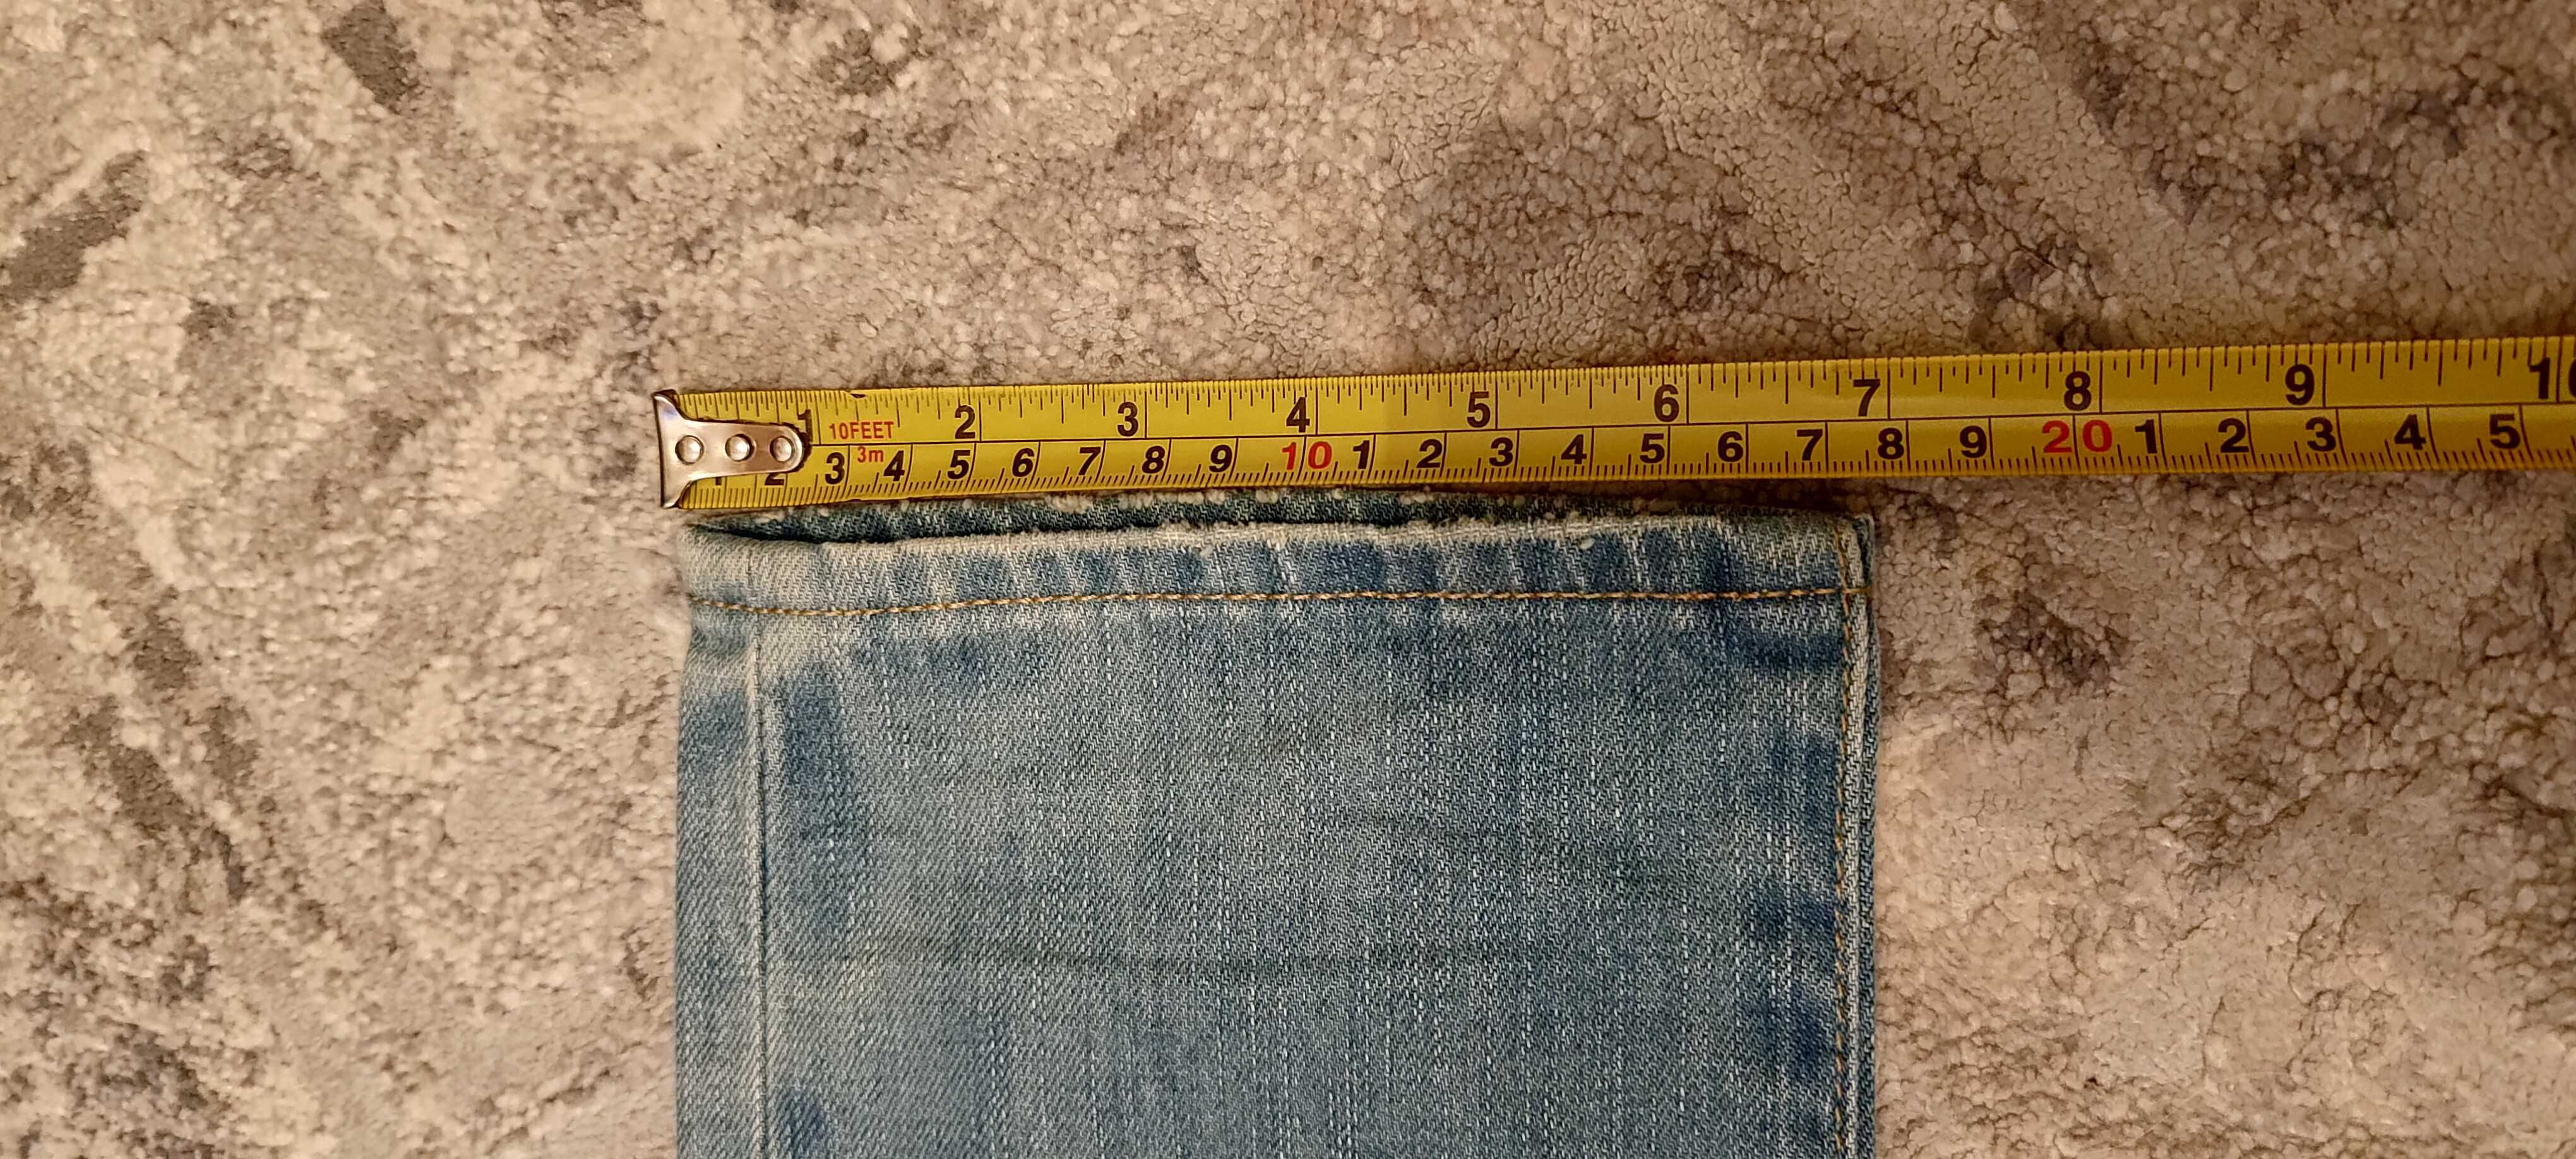 Spodnie jeansowe American Eagle nowe 28/32 z USA